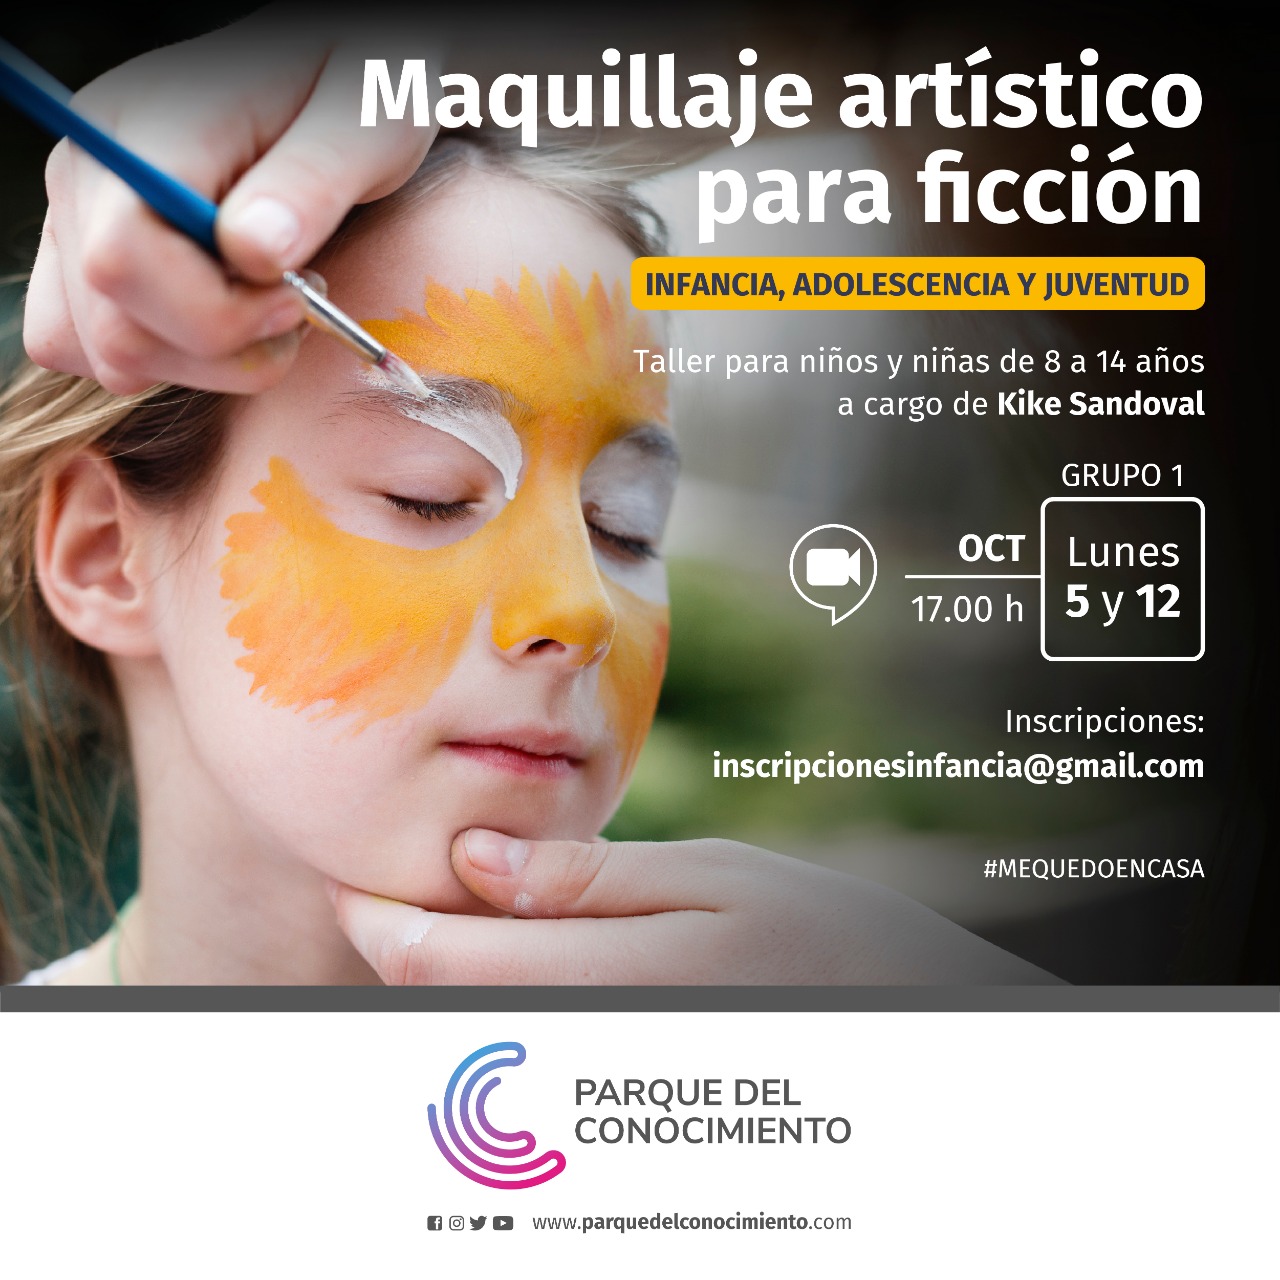 Taller de Maquillaje Artístico para Ficción - Agencia de Noticias Guacurari